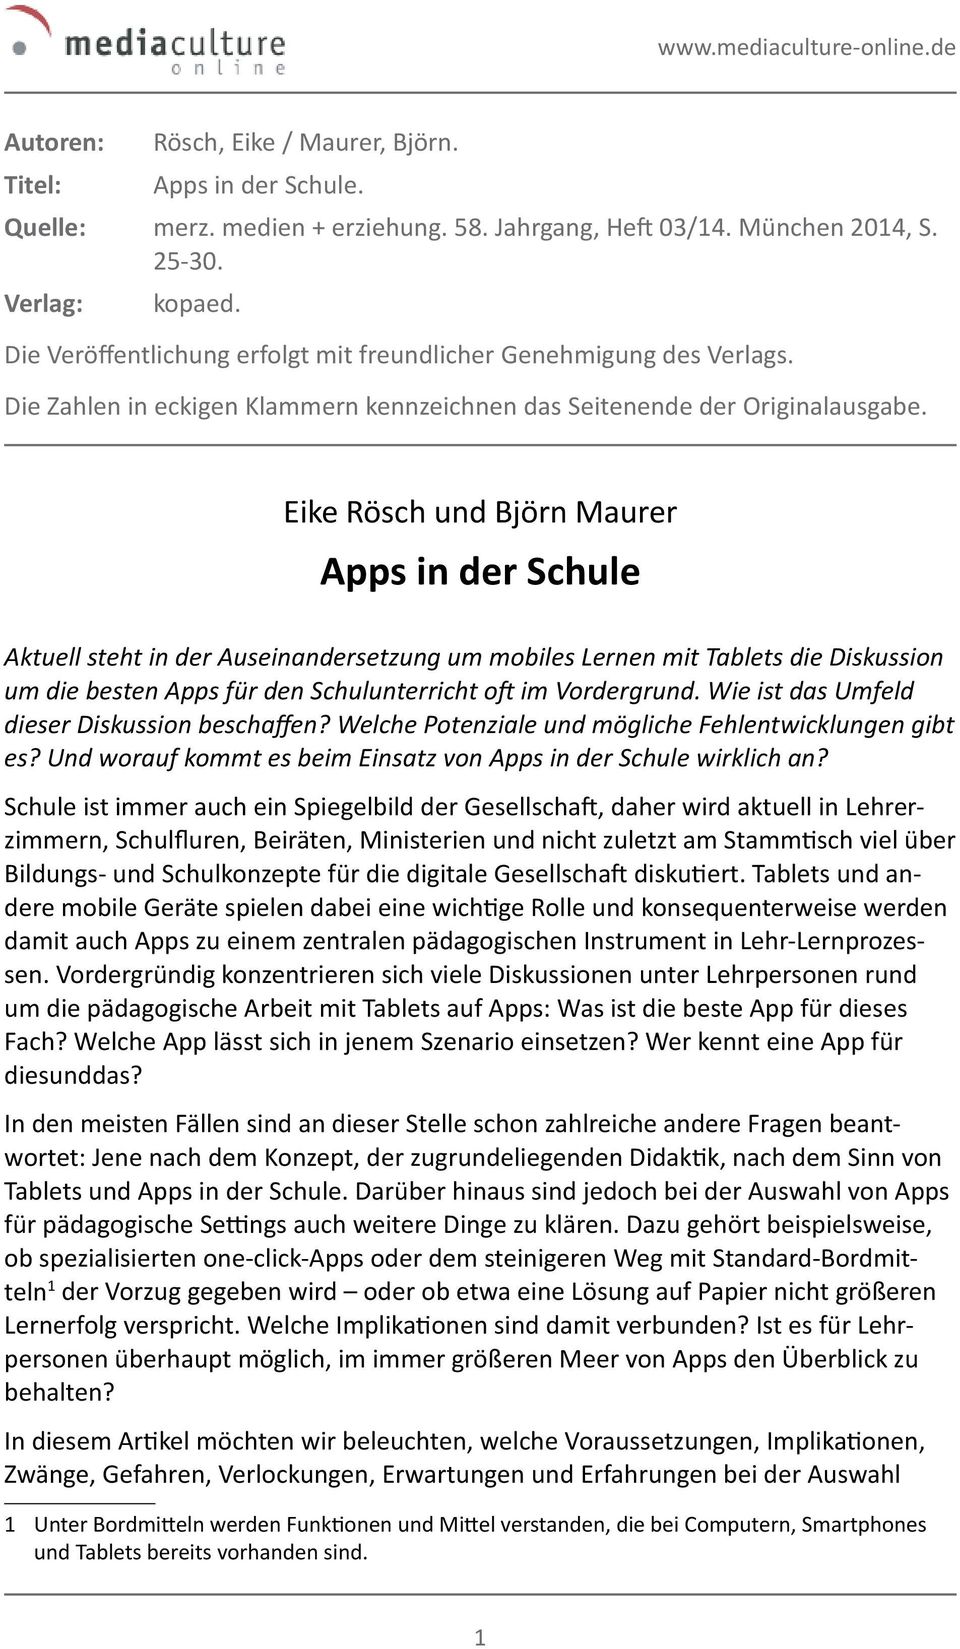 Eike Rösch und Björn Maurer Apps in der Schule Aktuell steht in der Auseinandersetzung um mobiles Lernen mit Tablets die Diskussion um die besten Apps für den Schulunterricht oft im Vordergrund.